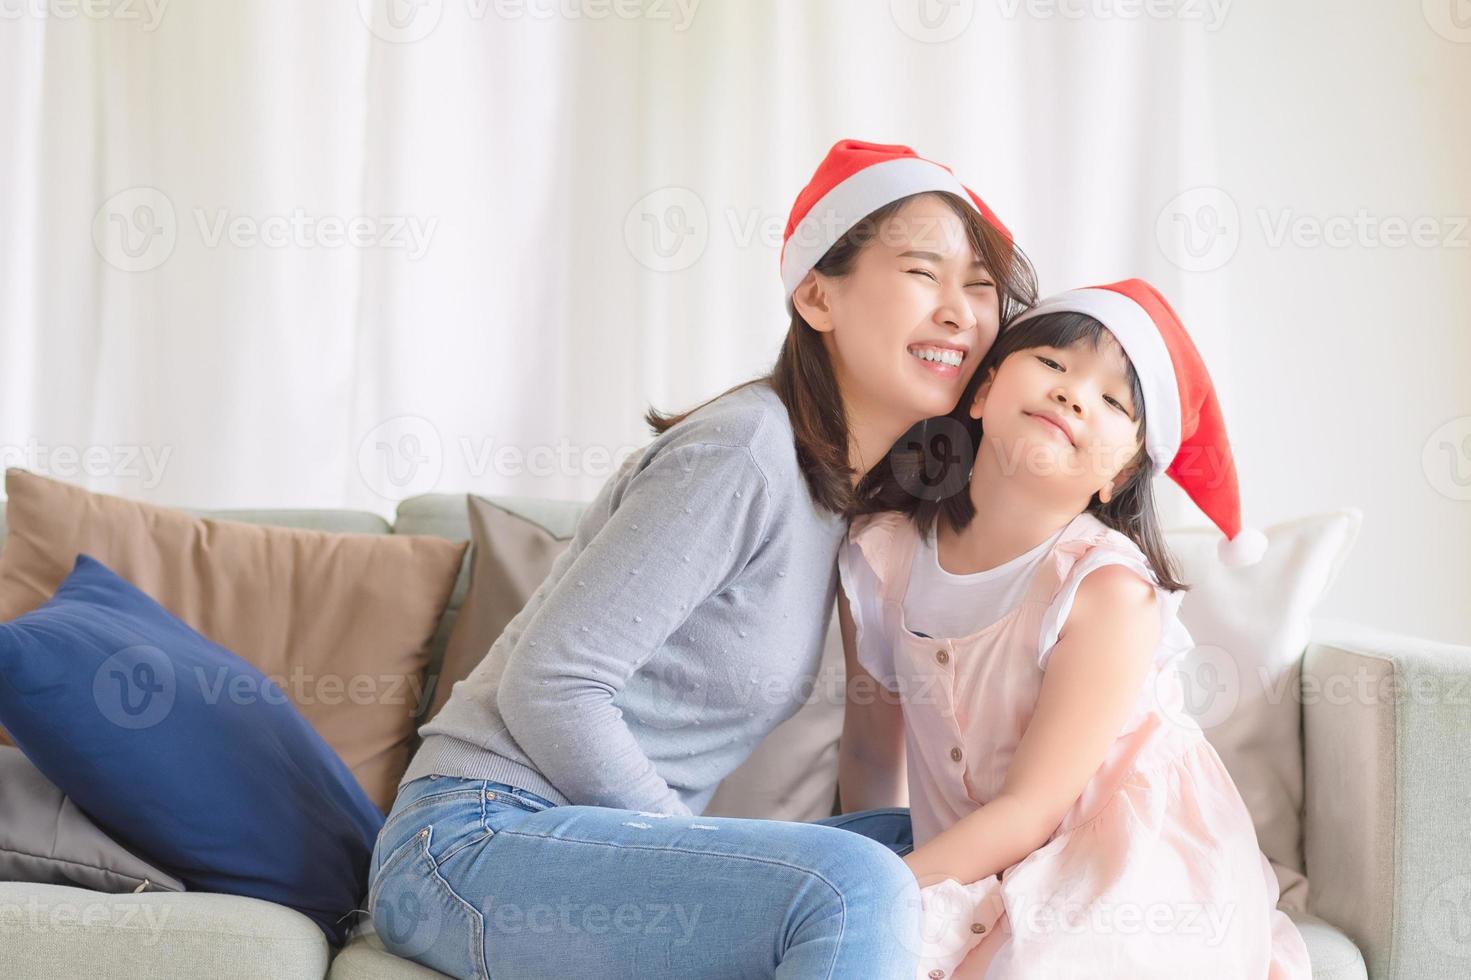 la fille de la mère asiatique profite de la fête de noël et du nouvel an à la maison en décembre photo